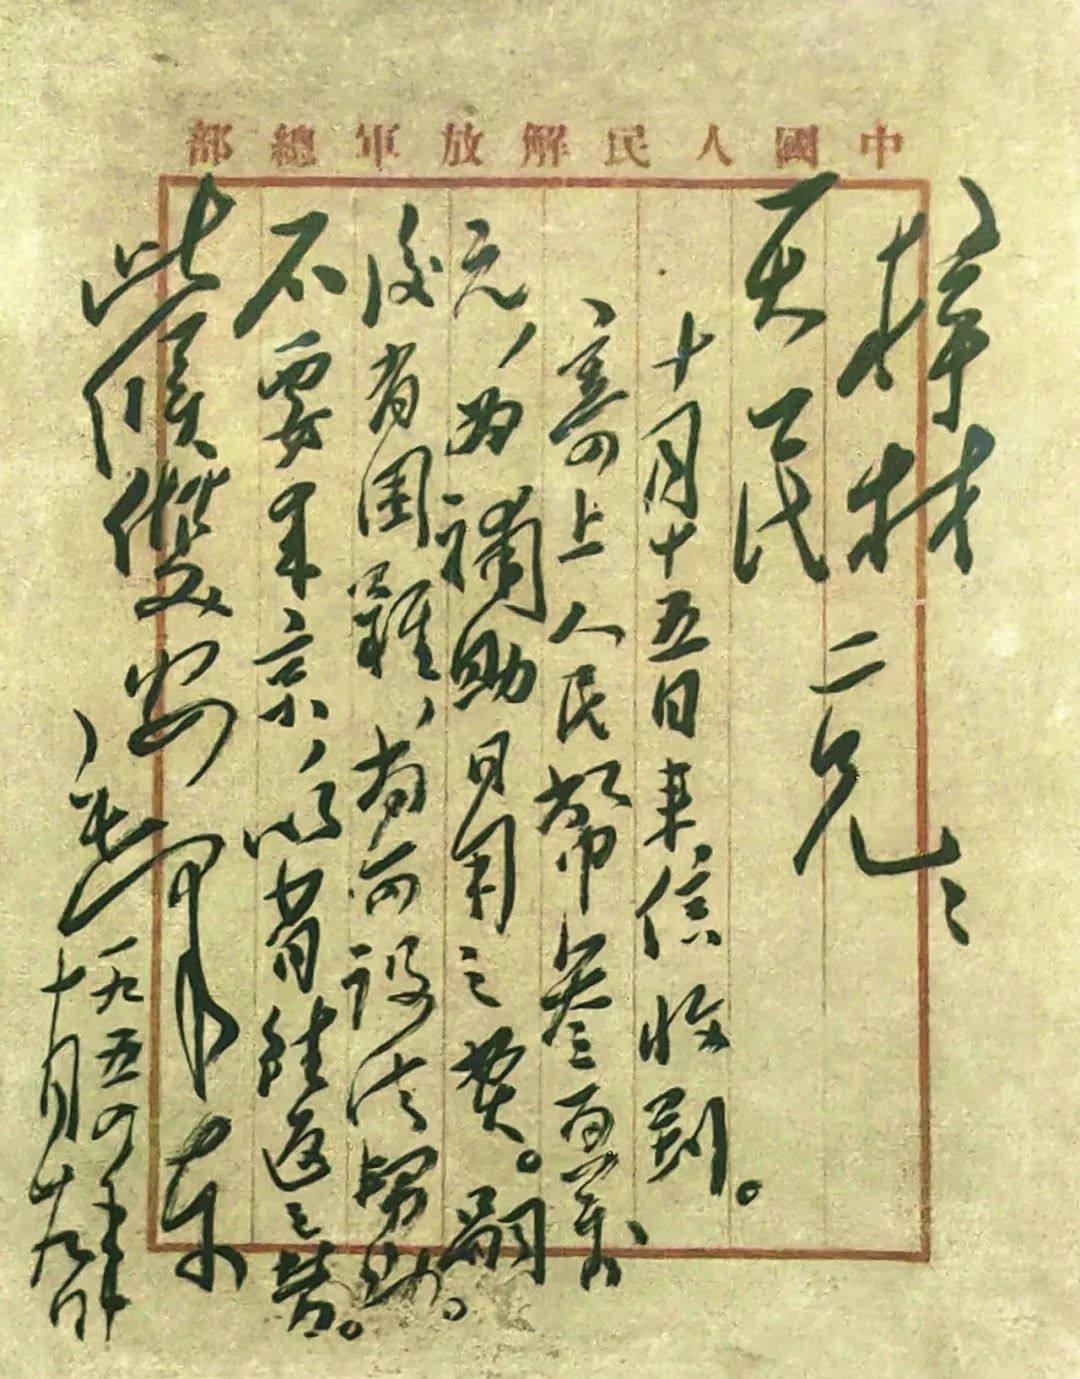 ·韶山毛泽东同志纪念馆展示的毛主席写给郭梓材、刘天民夫妇的回信。